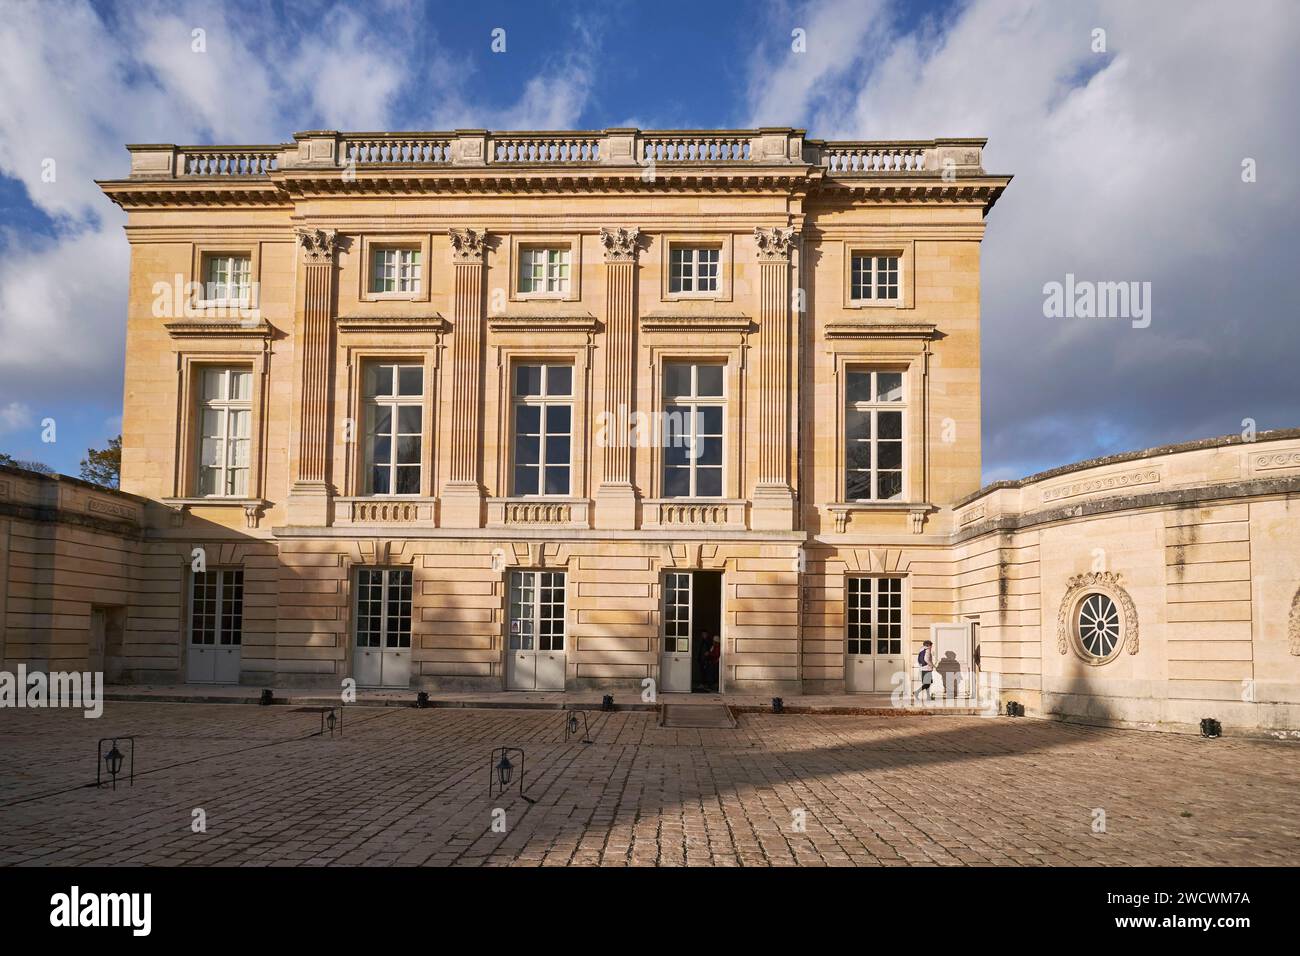 Frankreich, Yvelines, Versailles, Schloss von Versailles, das von der UNESCO zum Weltkulturerbe erklärt wurde, die Südfassade des Petit Trianon Palace Stockfoto